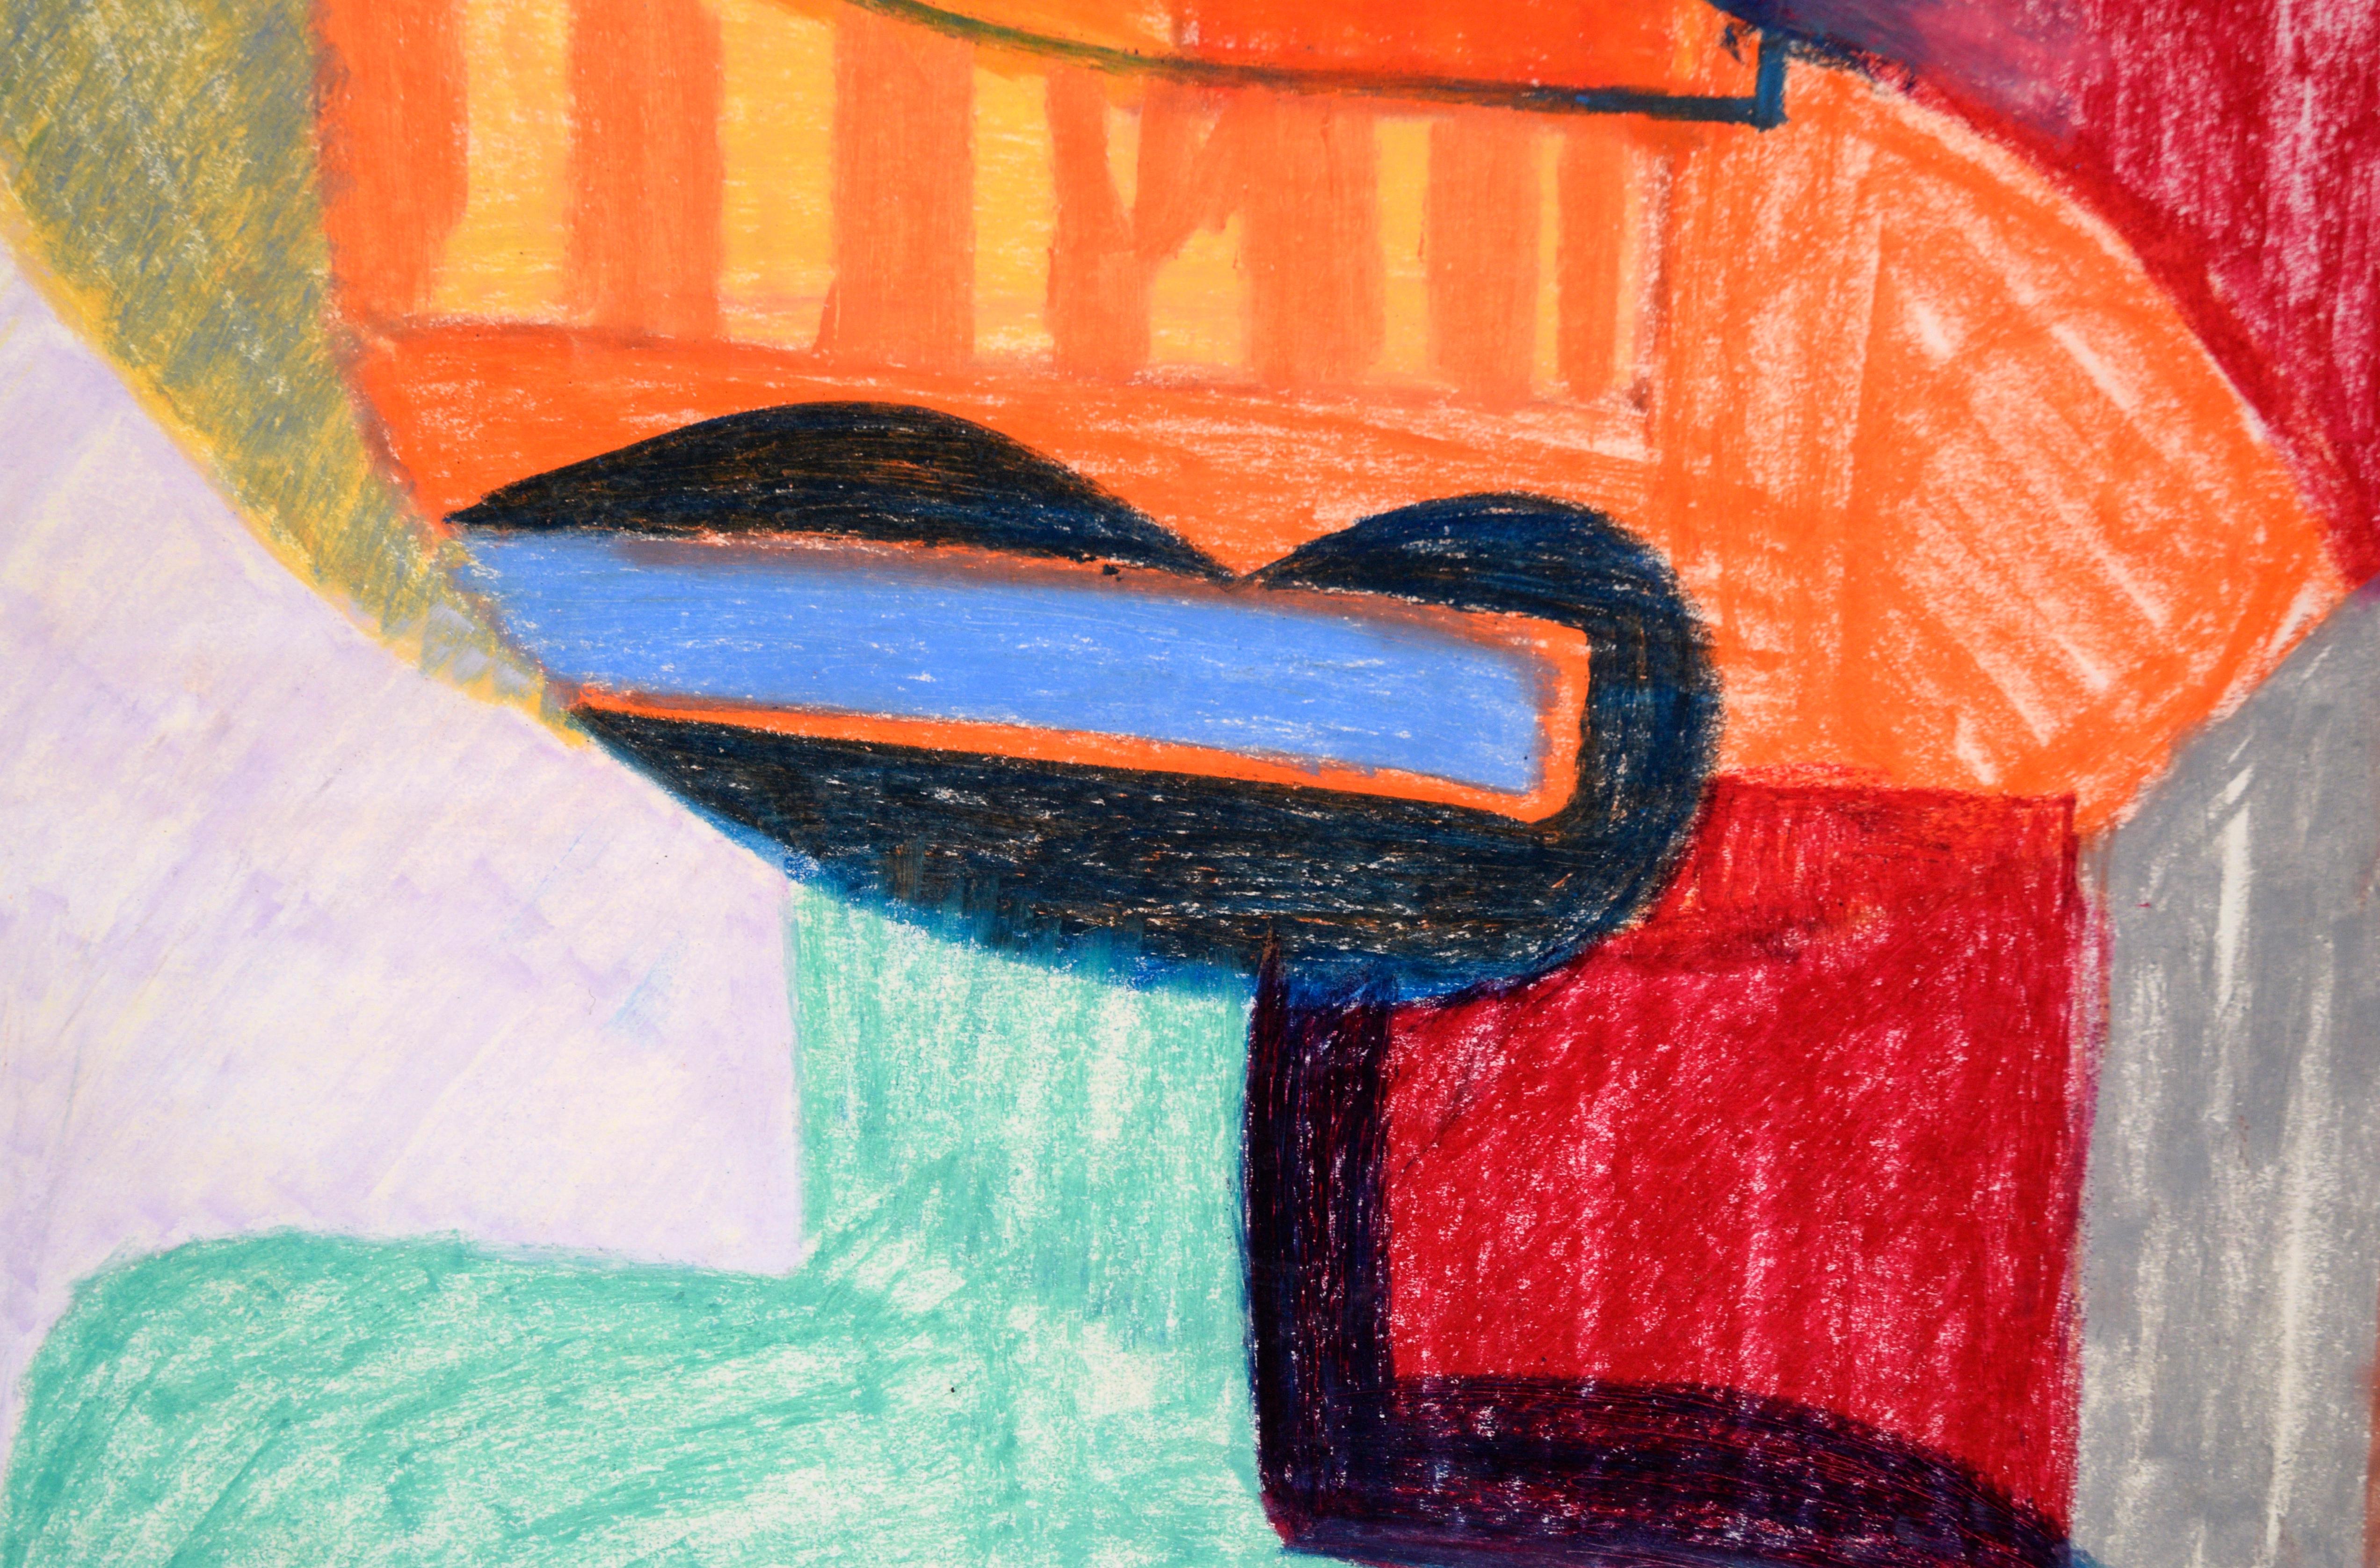 Leuchtend farbiges Porträt von Michael William Eggleston (Amerikaner, 20. Jahrhundert). Ein Porträt im kubistischen Stil zeigt eine abstrahierte Person, die eine orangefarbene Maske über den Augen trägt. Dieses Werk besteht aus leuchtenden Farben